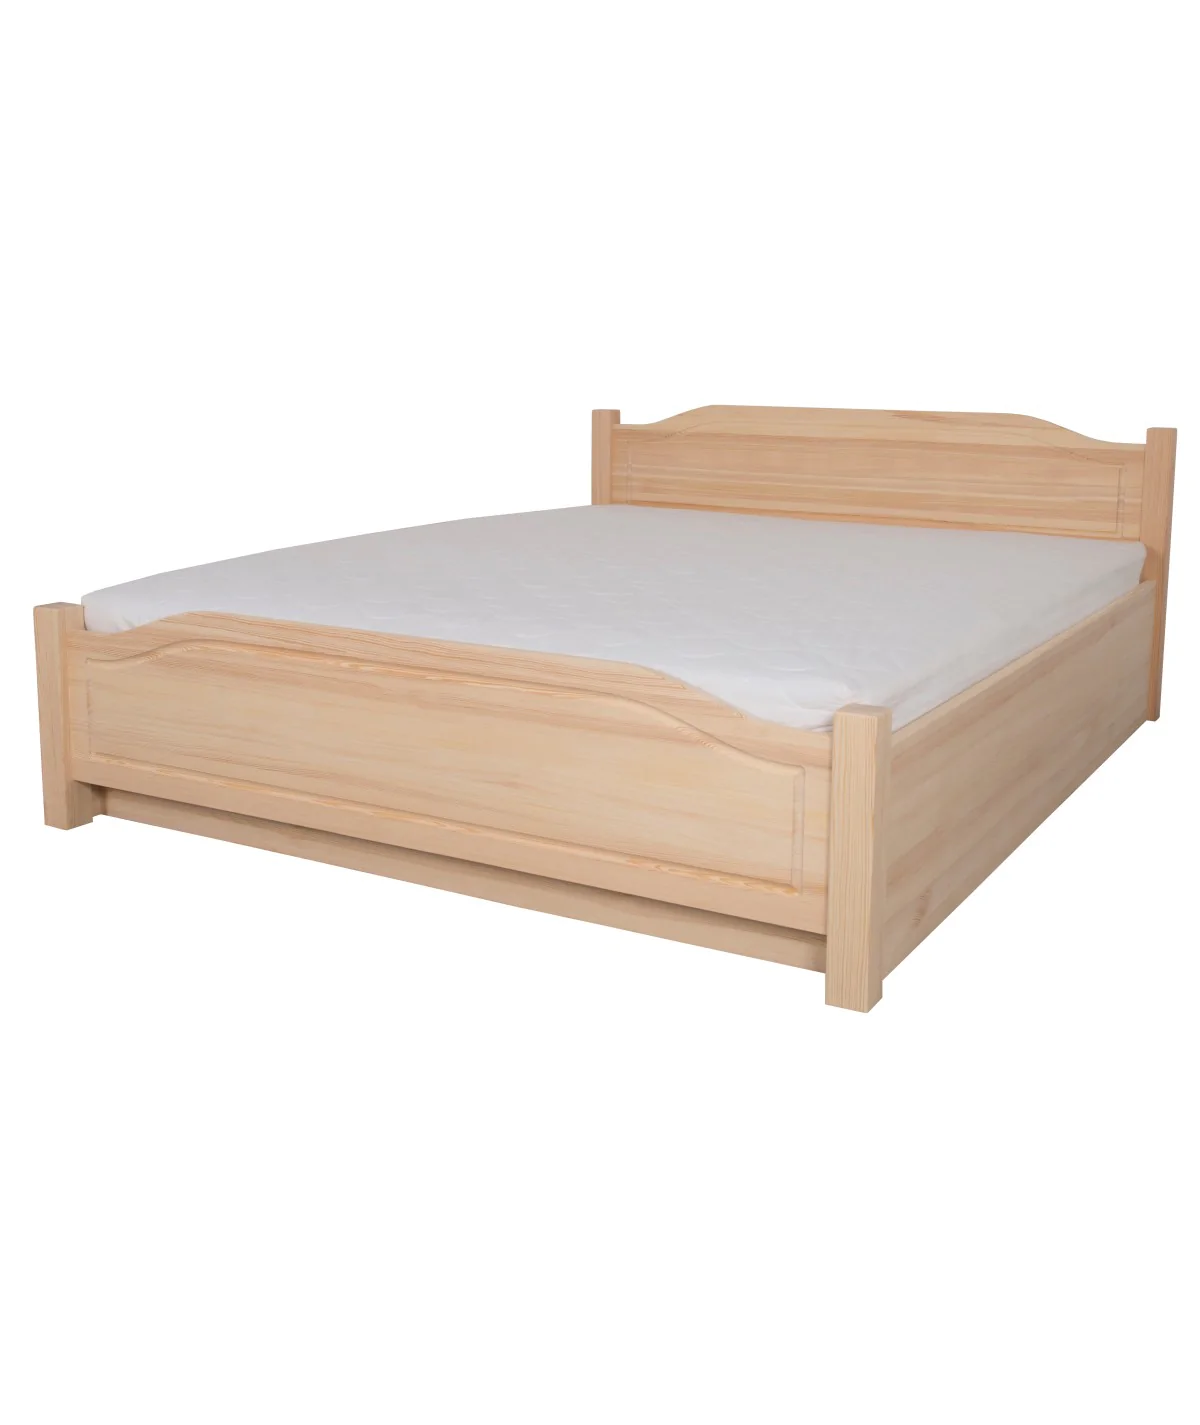 Łóżko bukowe OLIWIN 6 STOLMIS podnoszone na ramie drewnianej